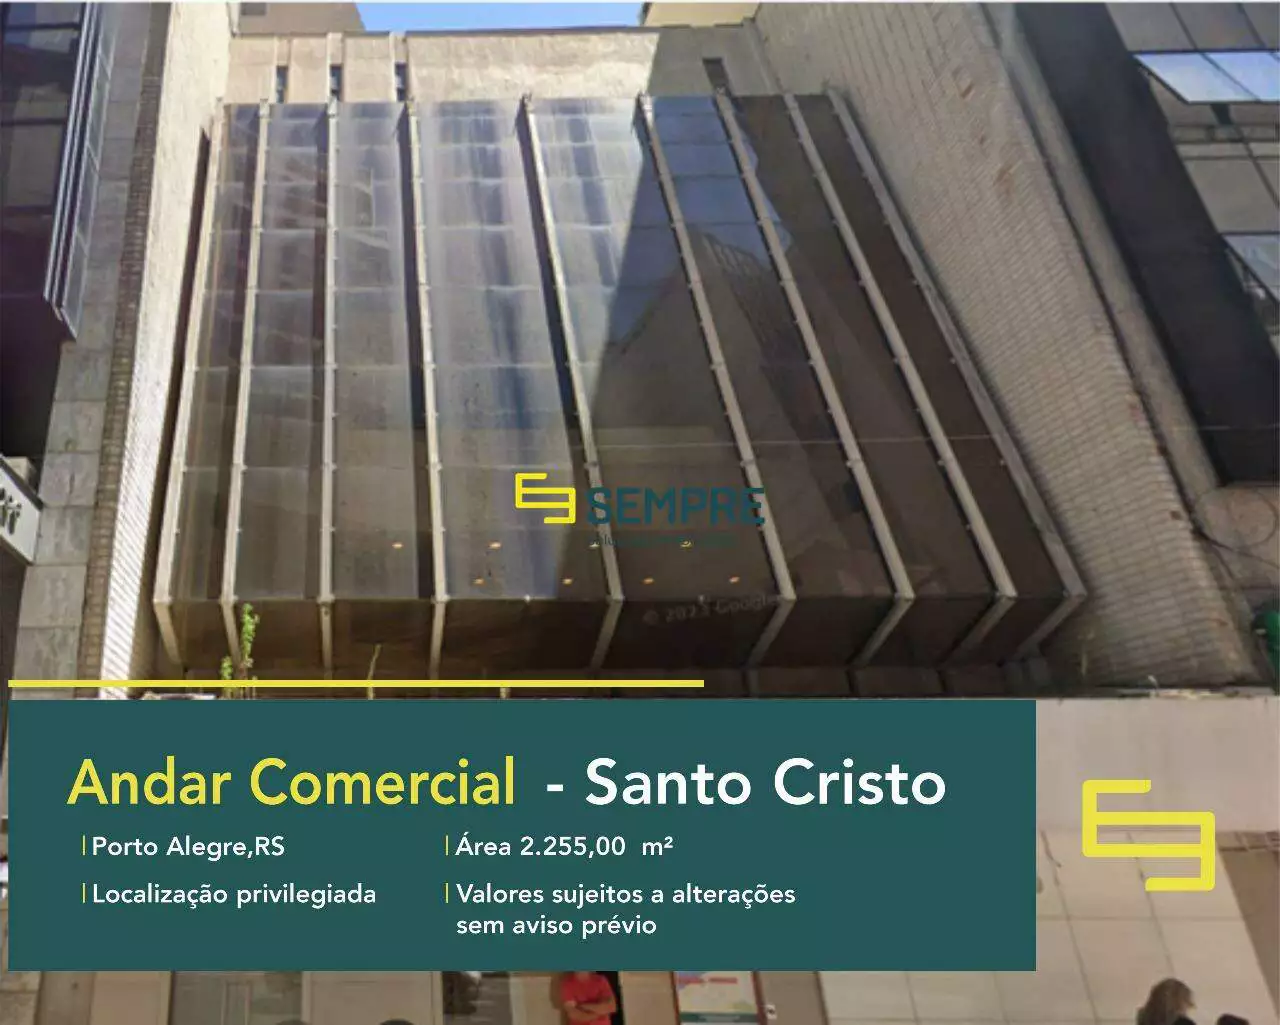 Andar comercial em Porto Alegre para locação - Rio Grande do Sul. O estabelecimento comercial conta com área de 2.255 m².